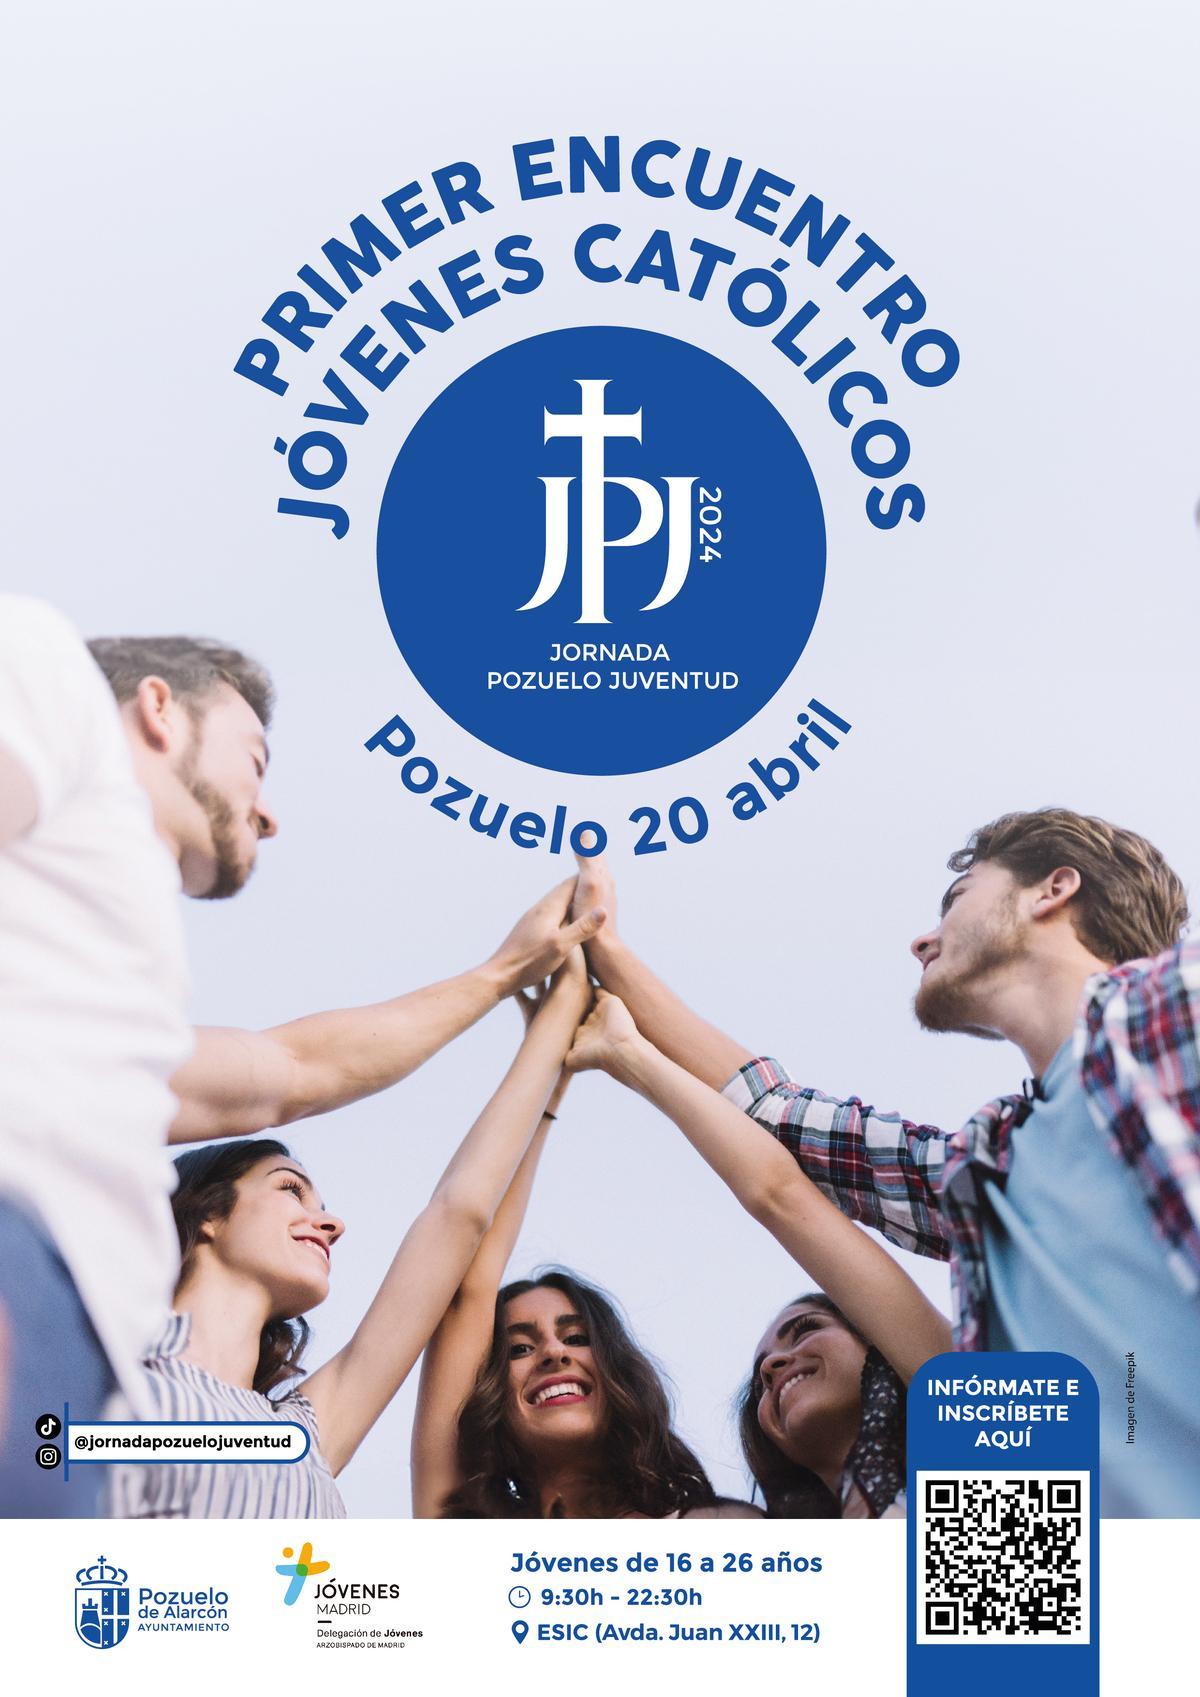 Cartel de la Jornada de Encuentro de Jóvenes Católicos en Pozuelo de Alarcón